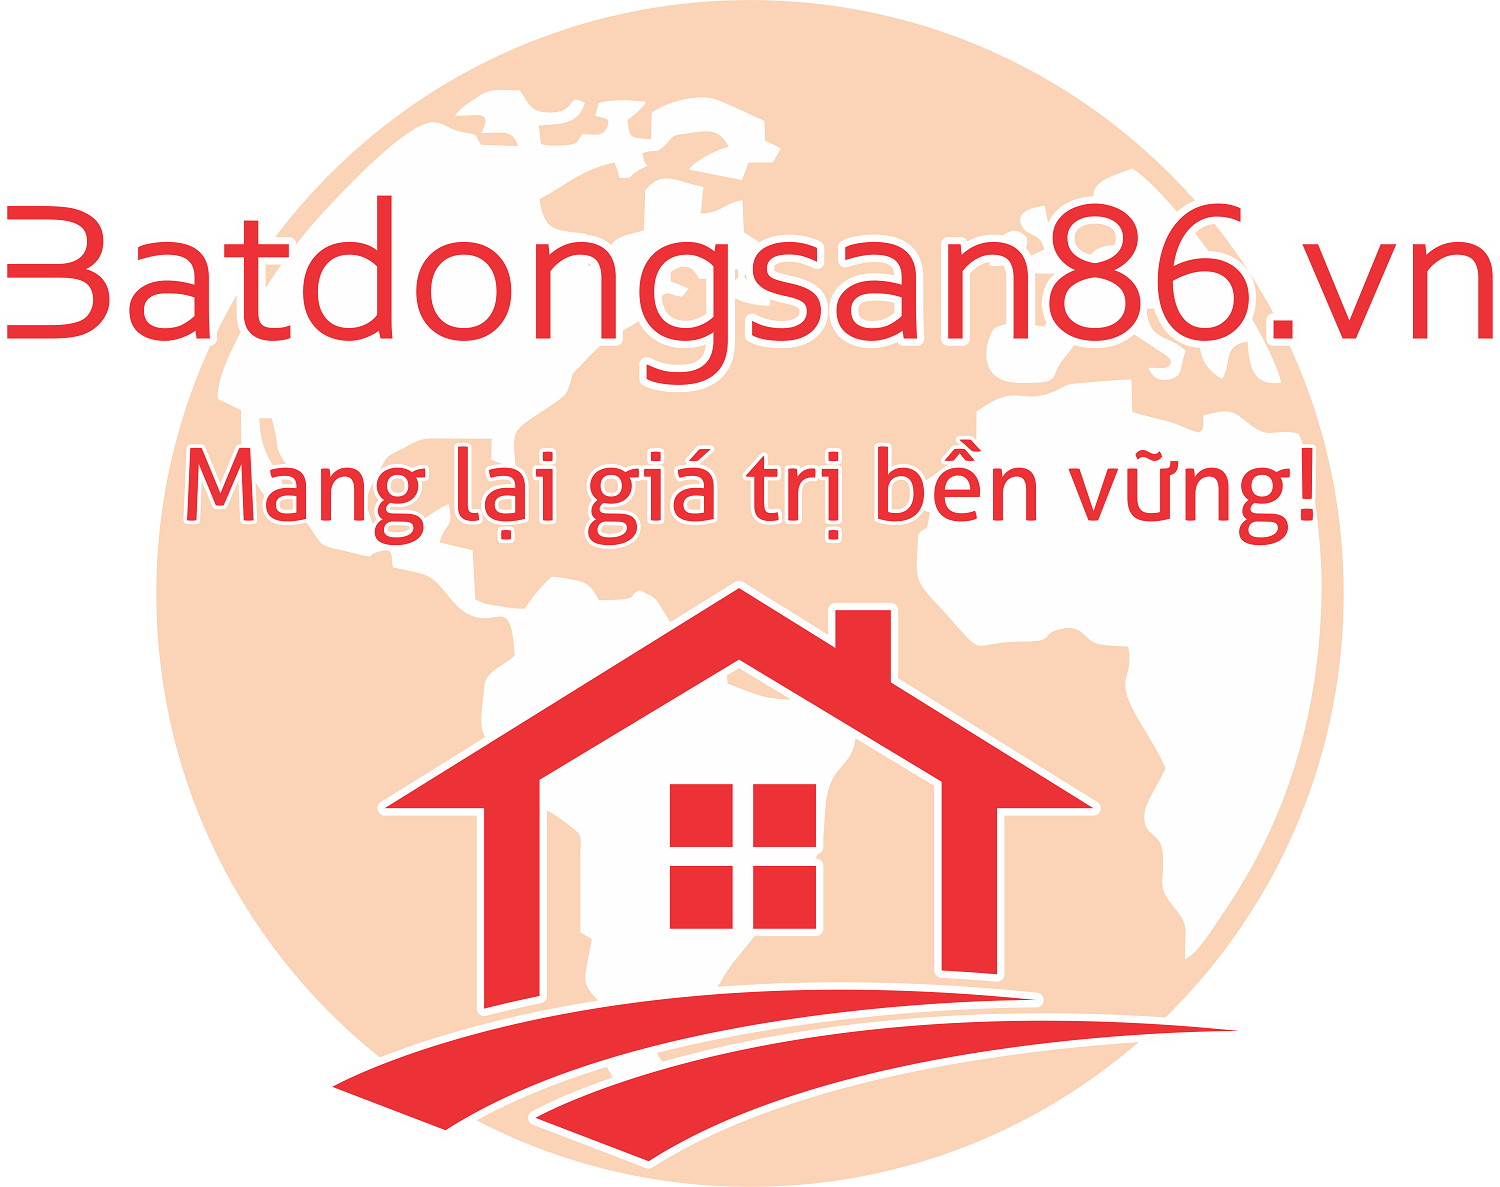 Batdongsan86.vn